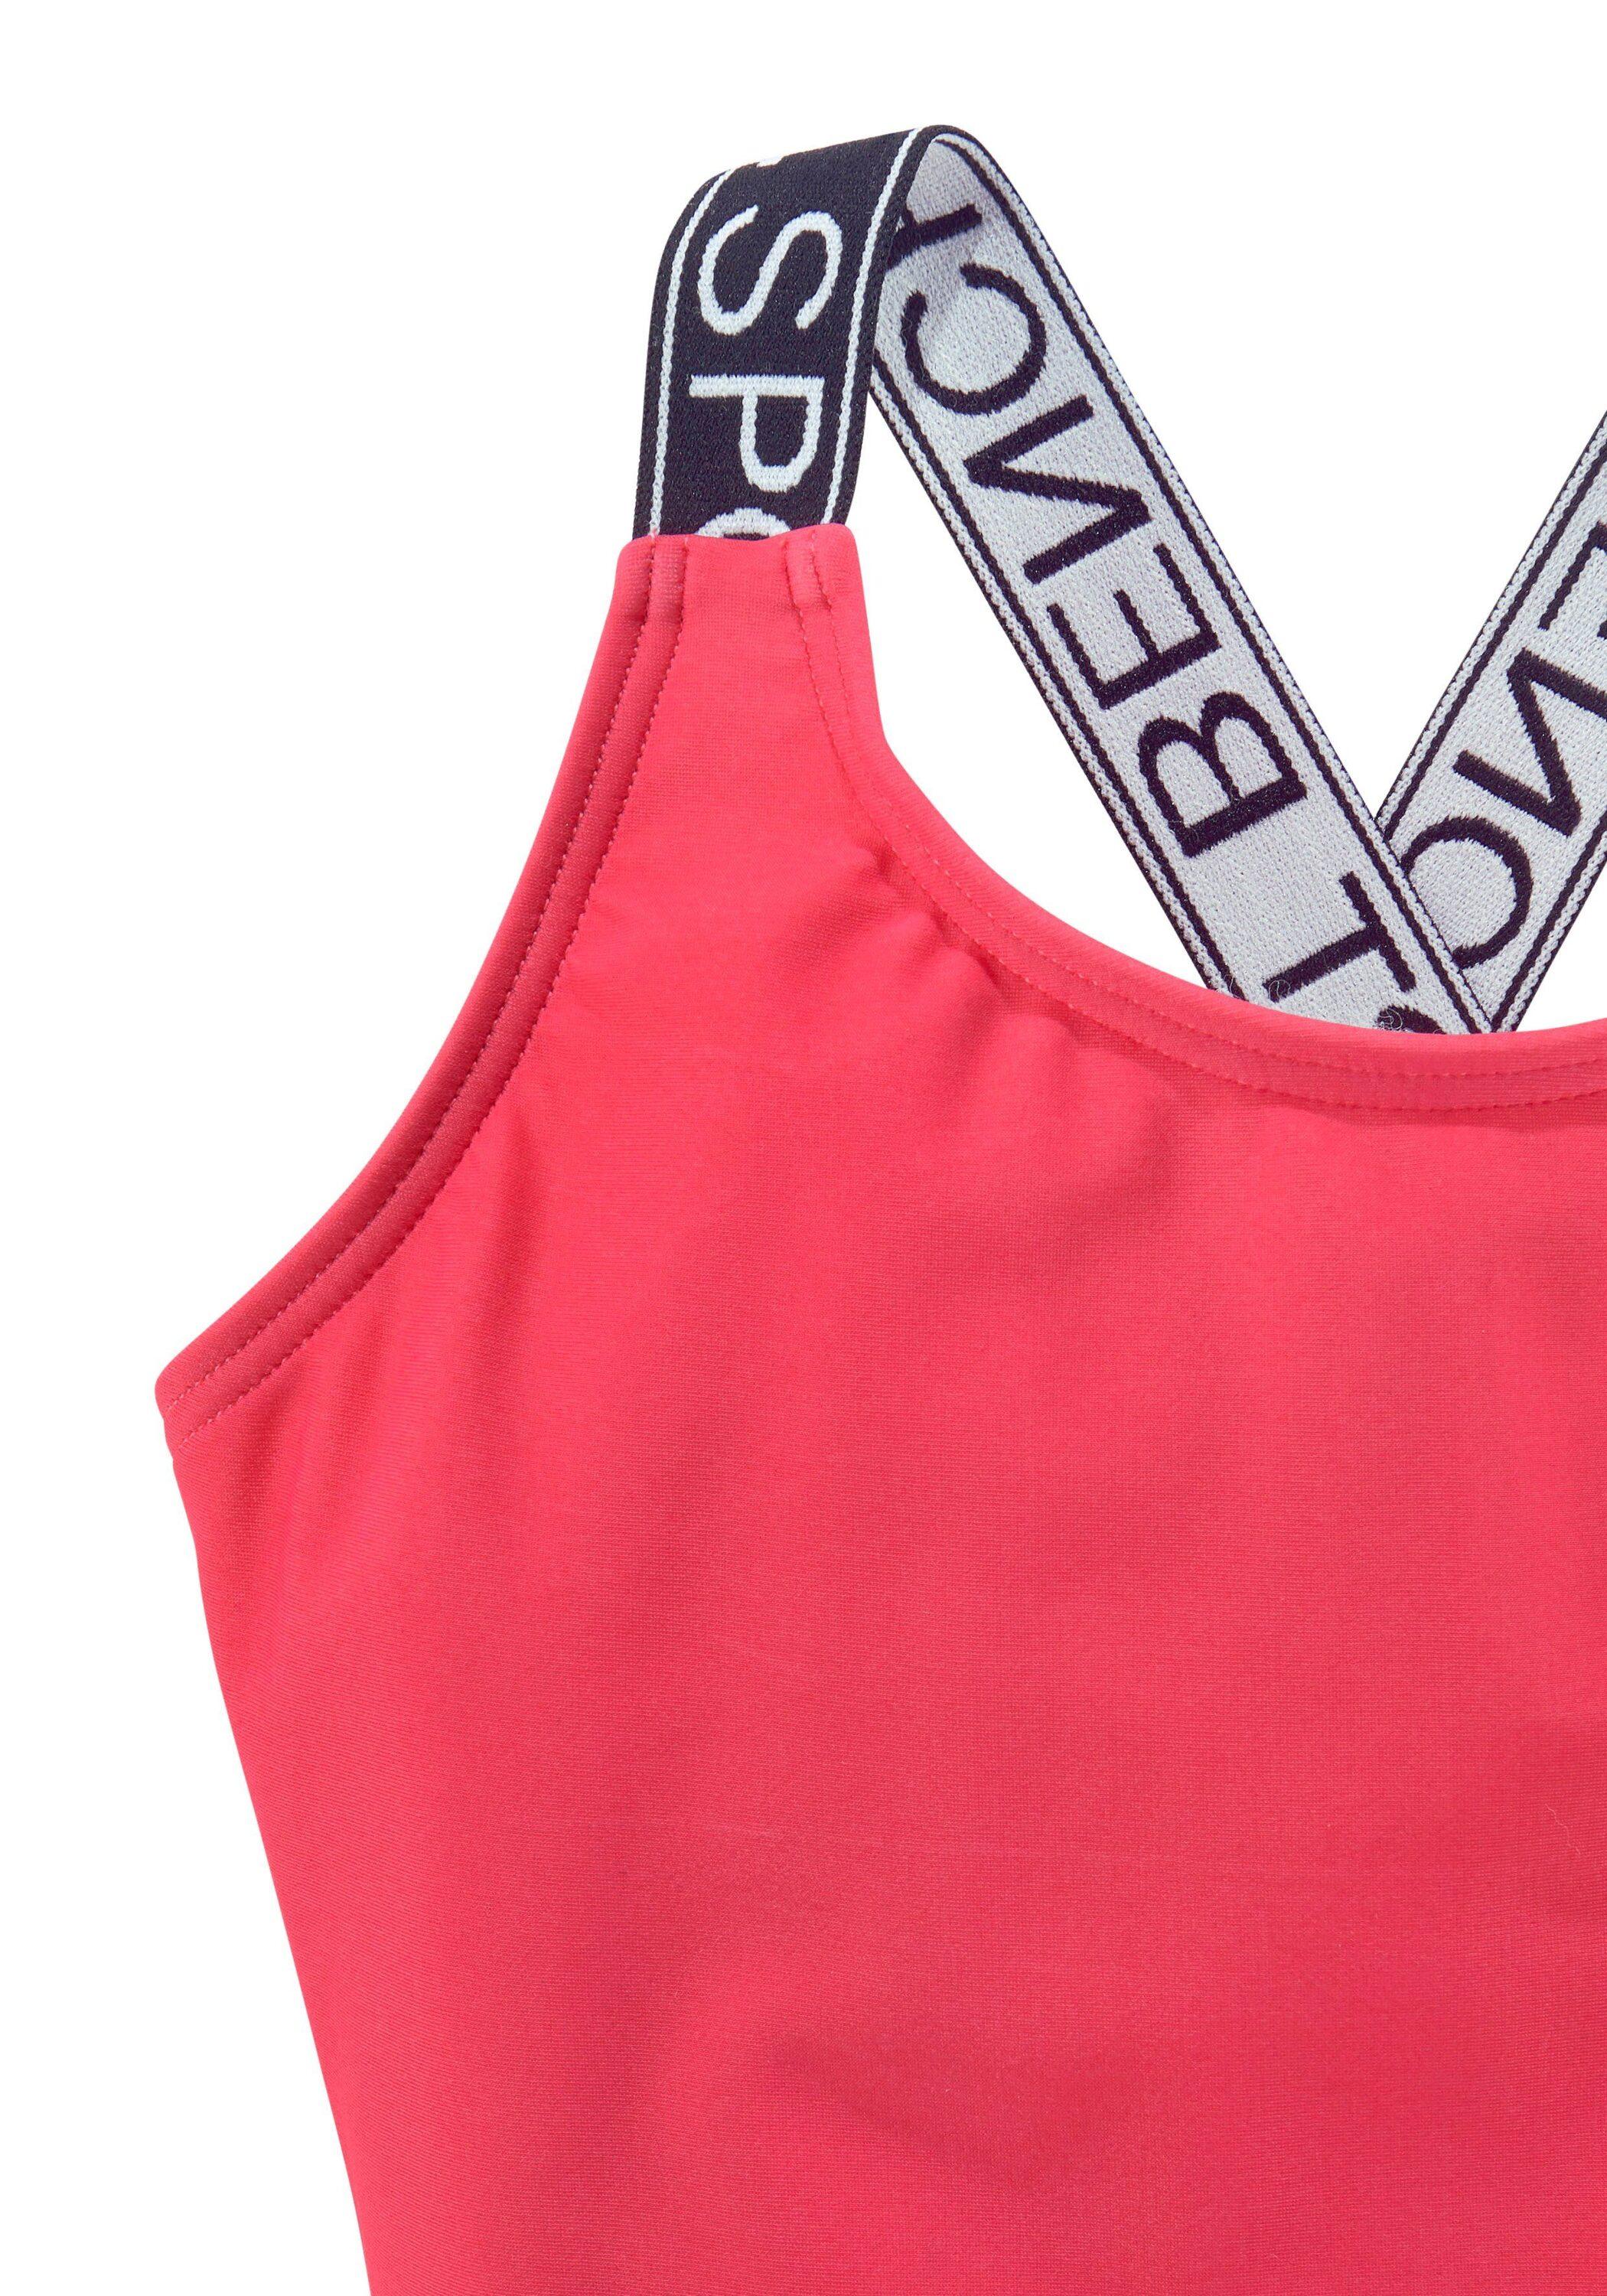 Damen Shop SportScheck Online im pink Bench Badeanzug von kaufen